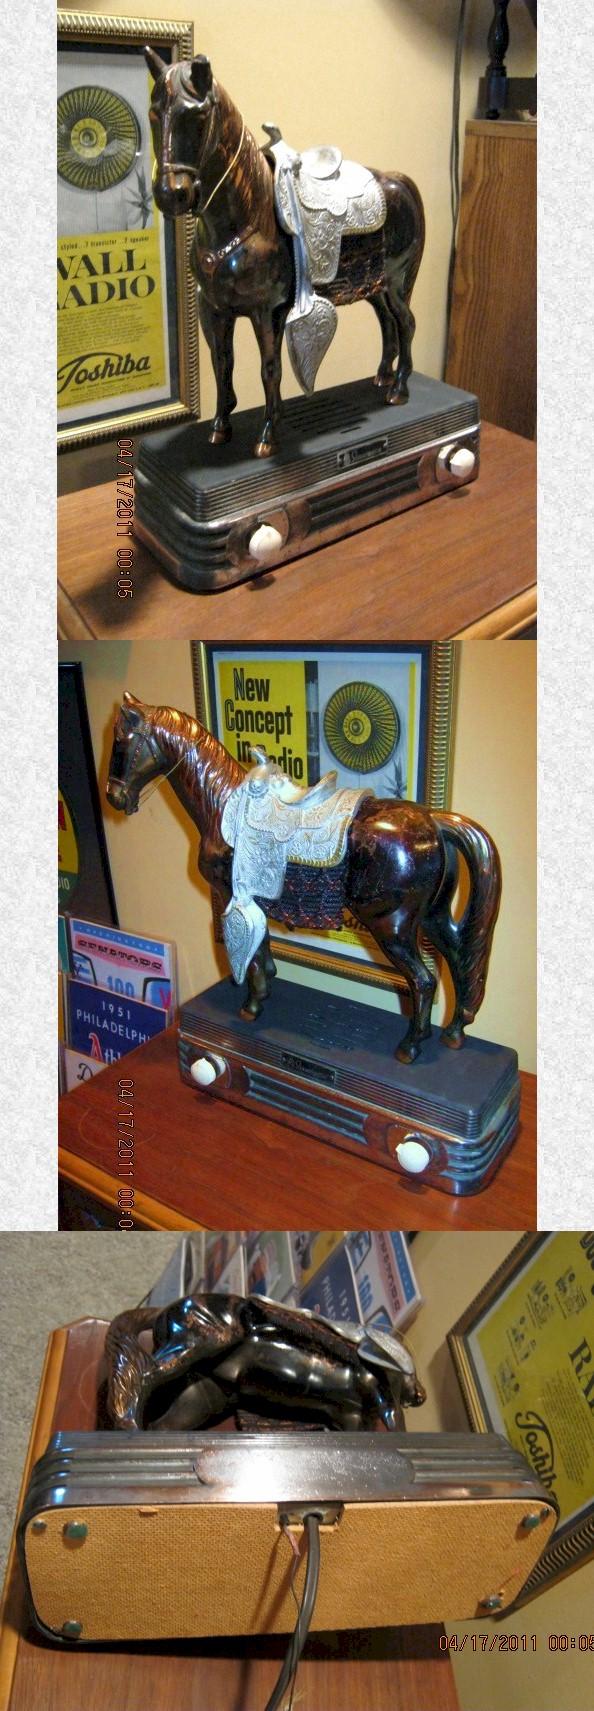 Abbotwares "Horse" Radio